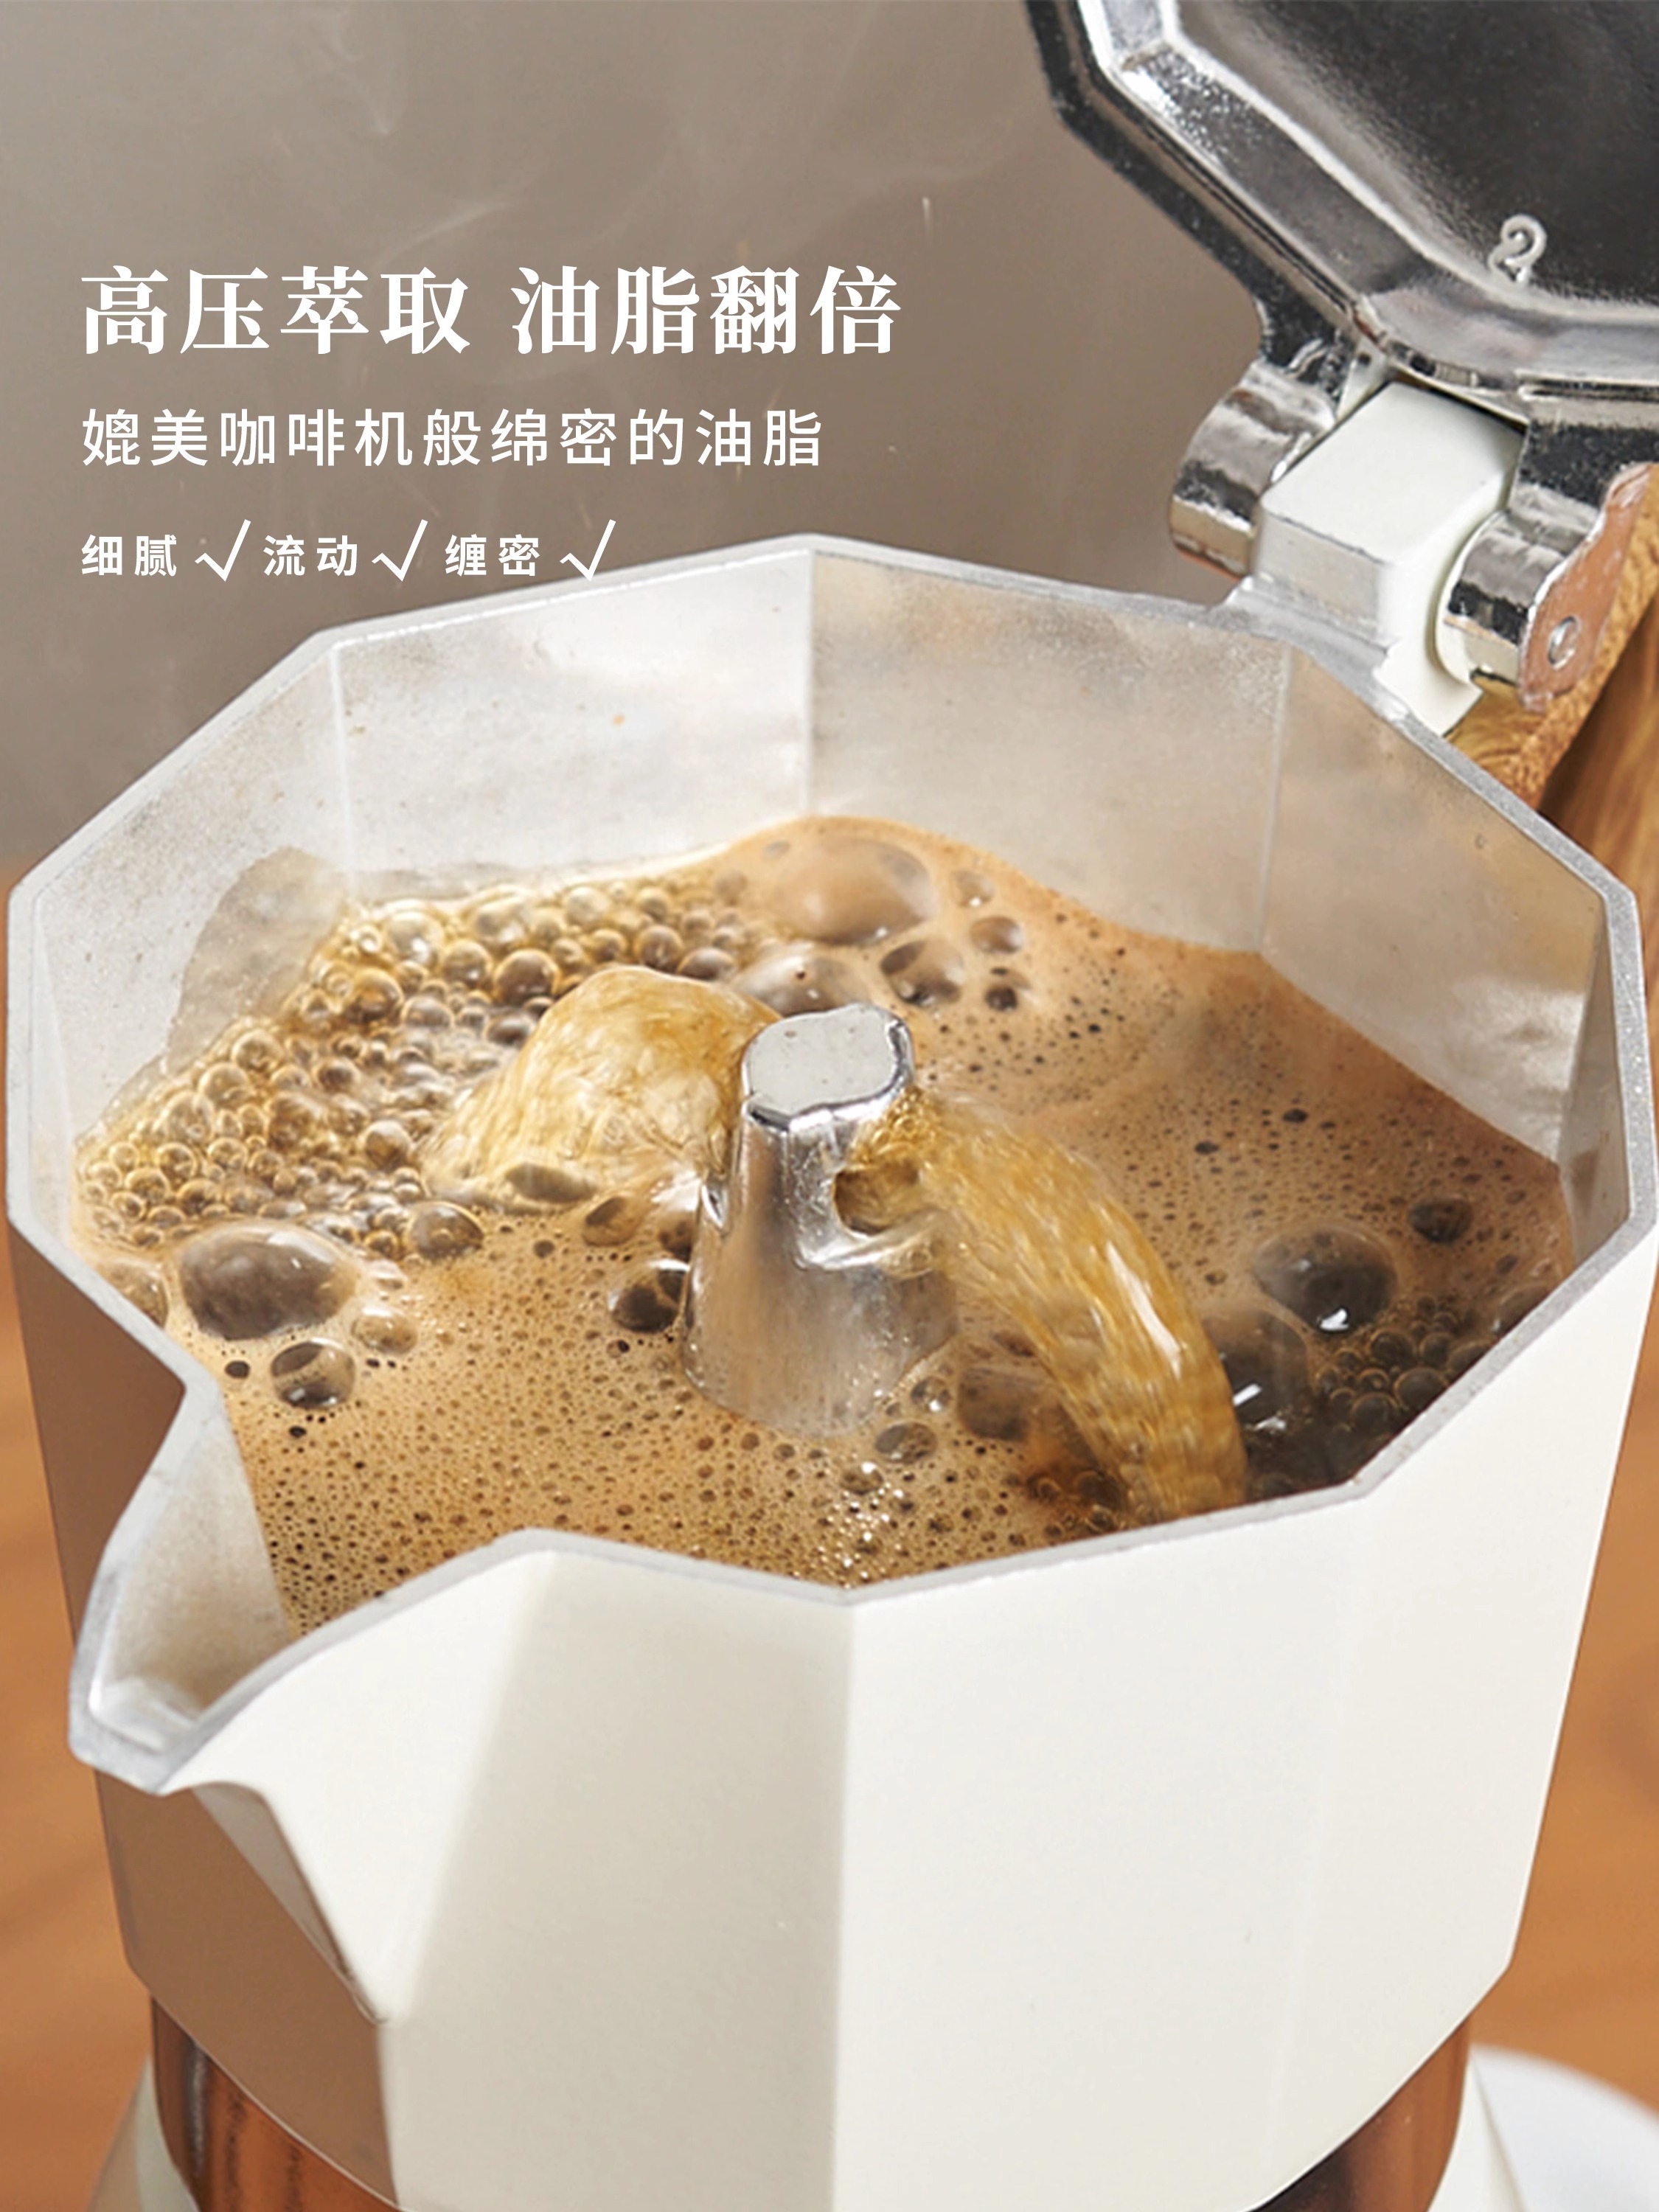 摩卡壺煮咖啡機家用小型電陶爐雙閥手衝咖啡壺套裝品牌肆月